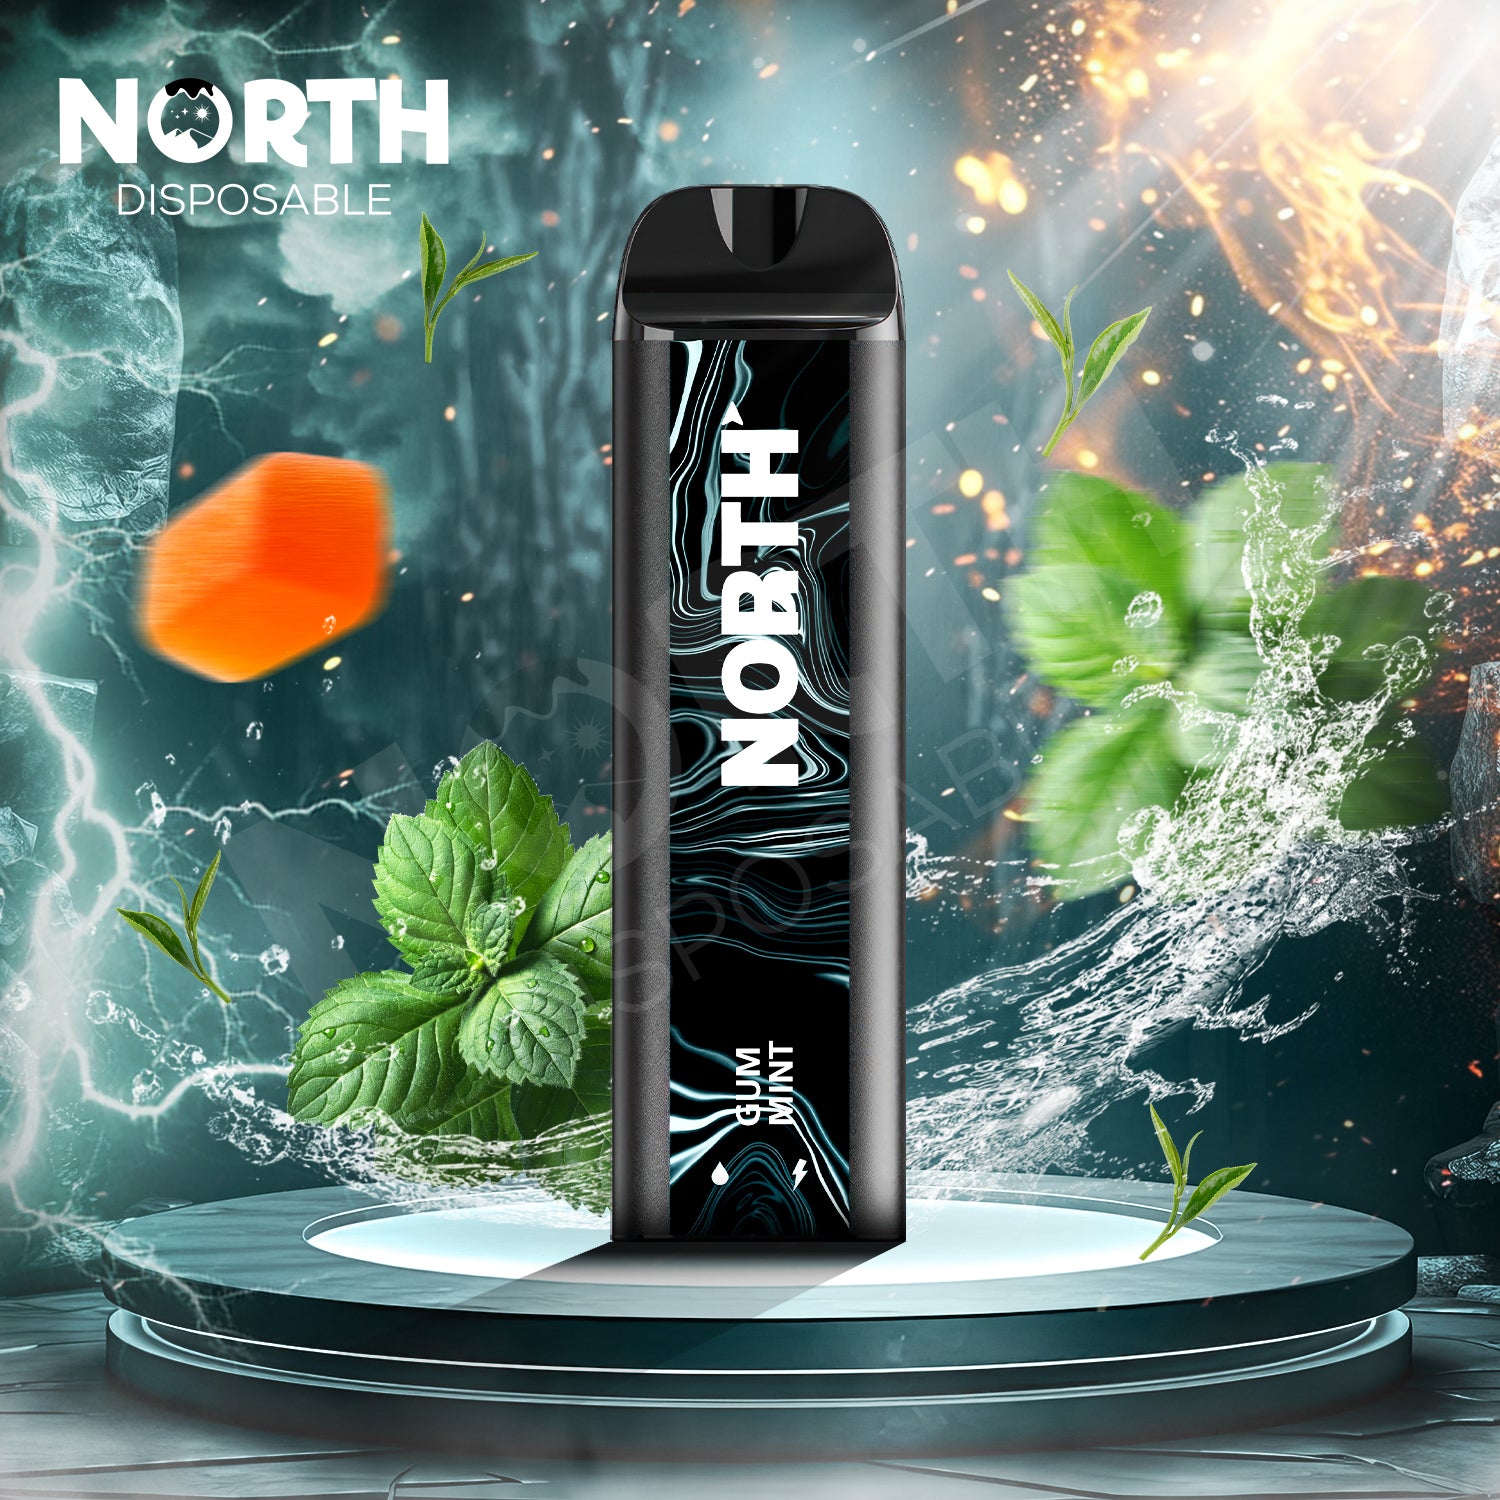 North 5000 Disposable - Gum Mint